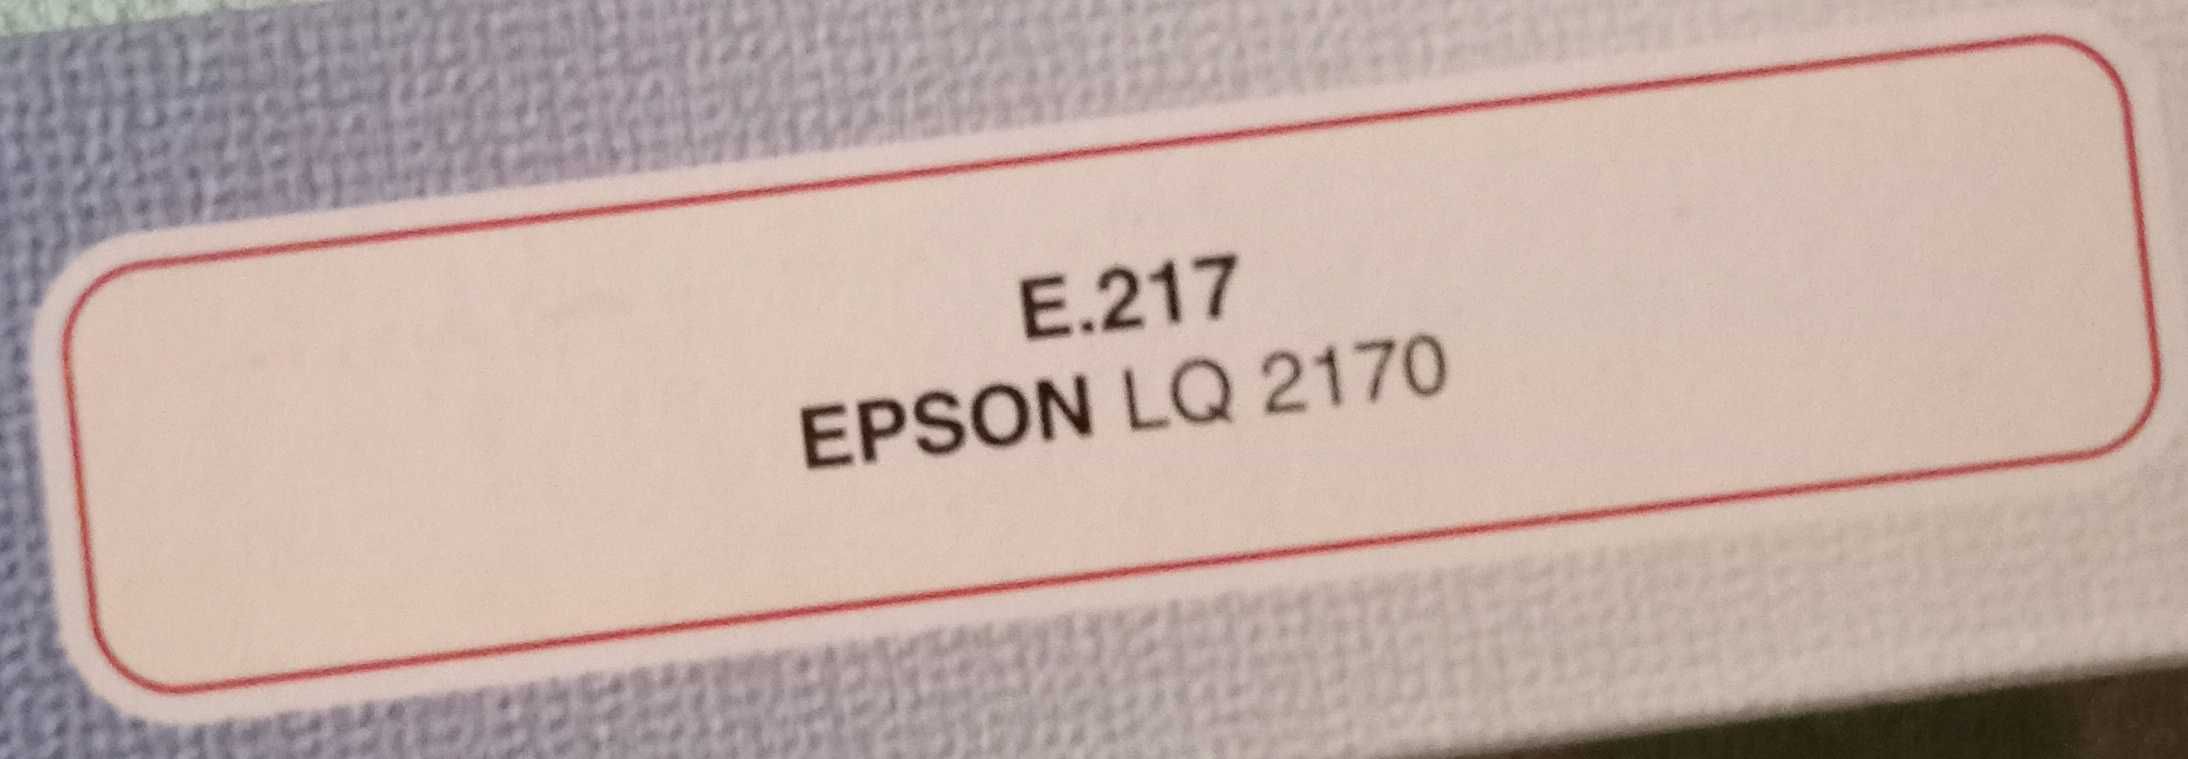 Картридж для Epson LQ-2170 WWM Black E.217